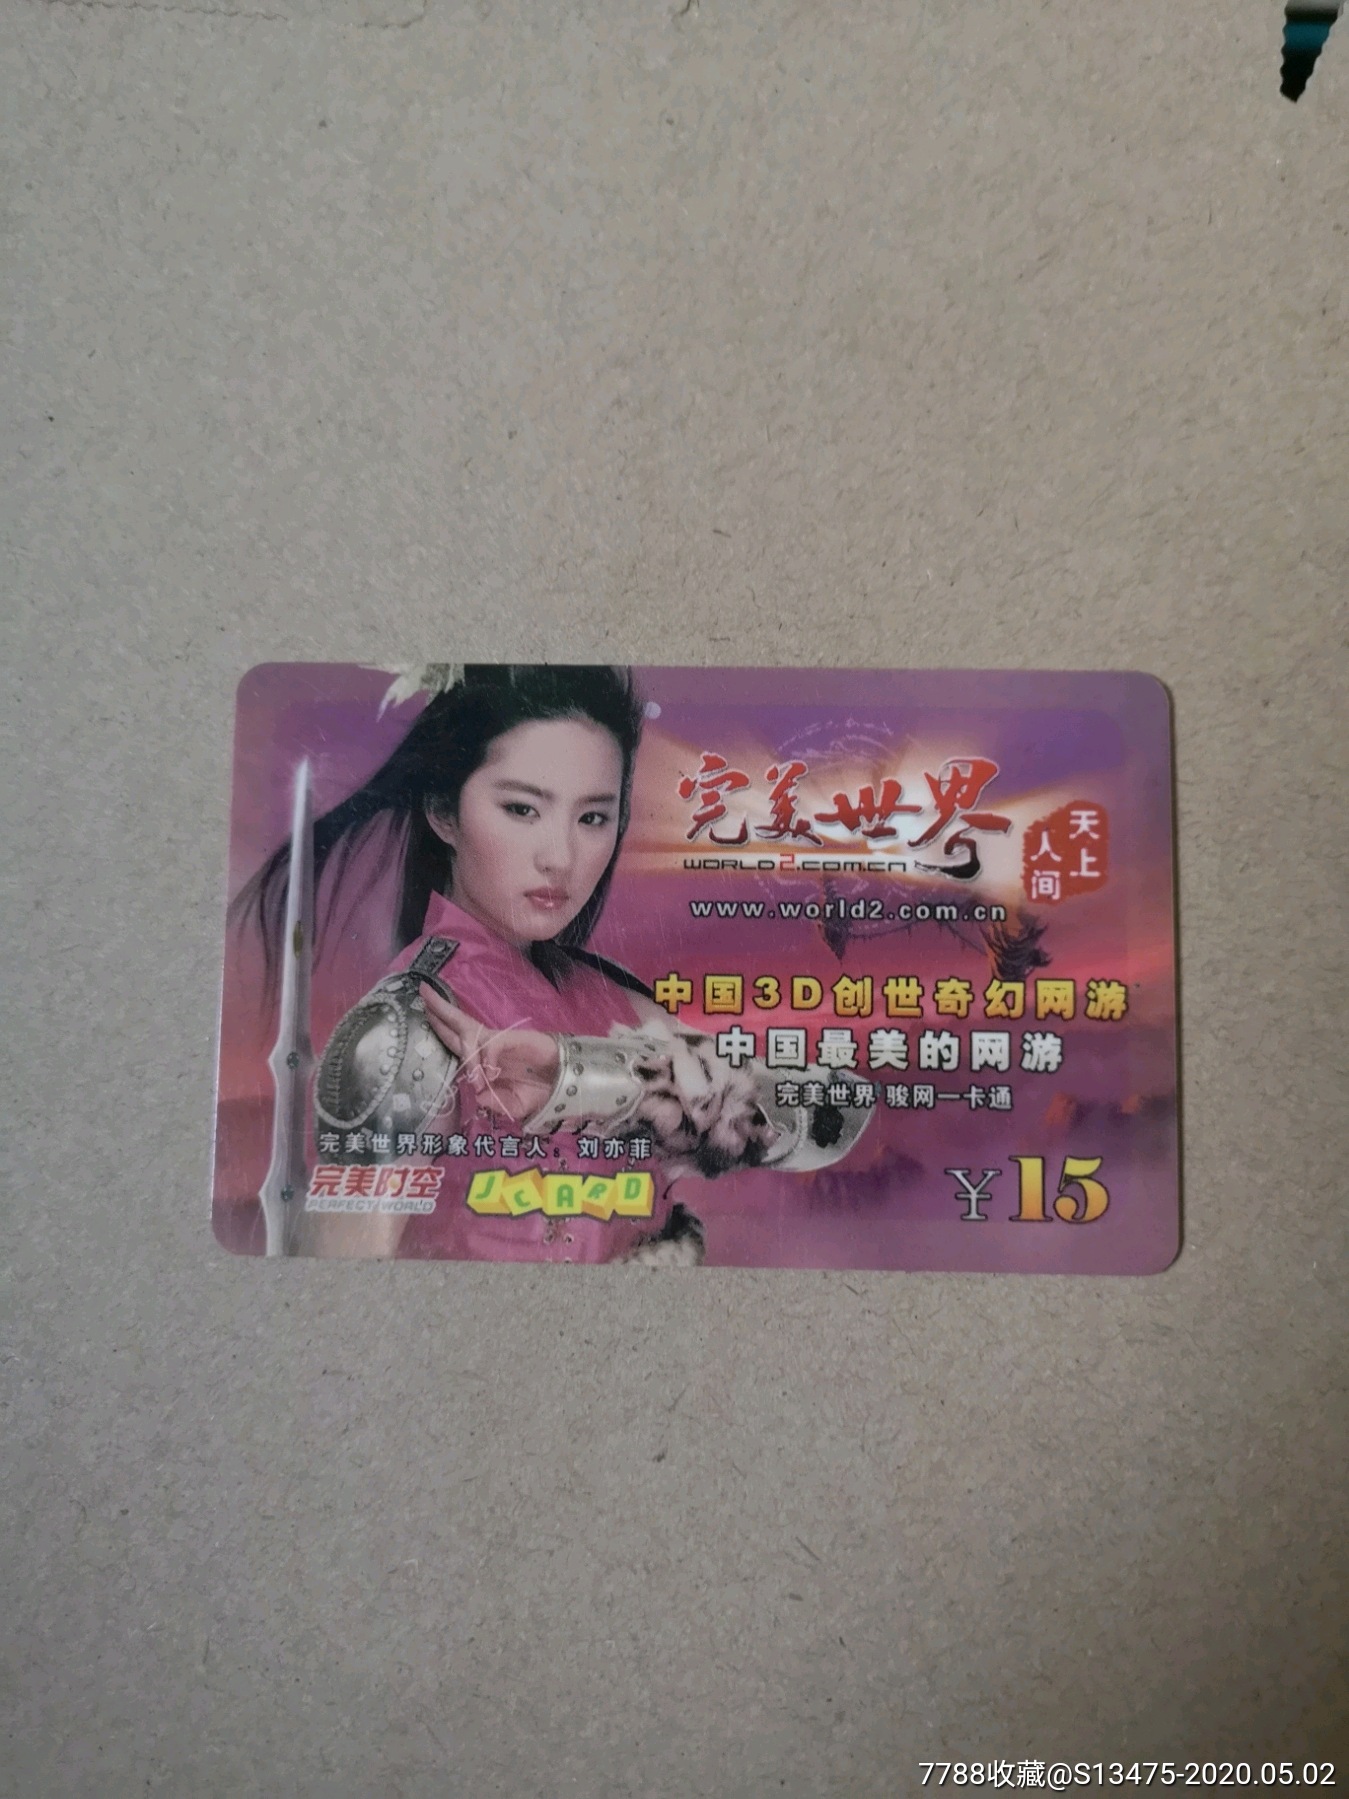 320游戏卡上的真人明星完美世界刘亦菲按图发货